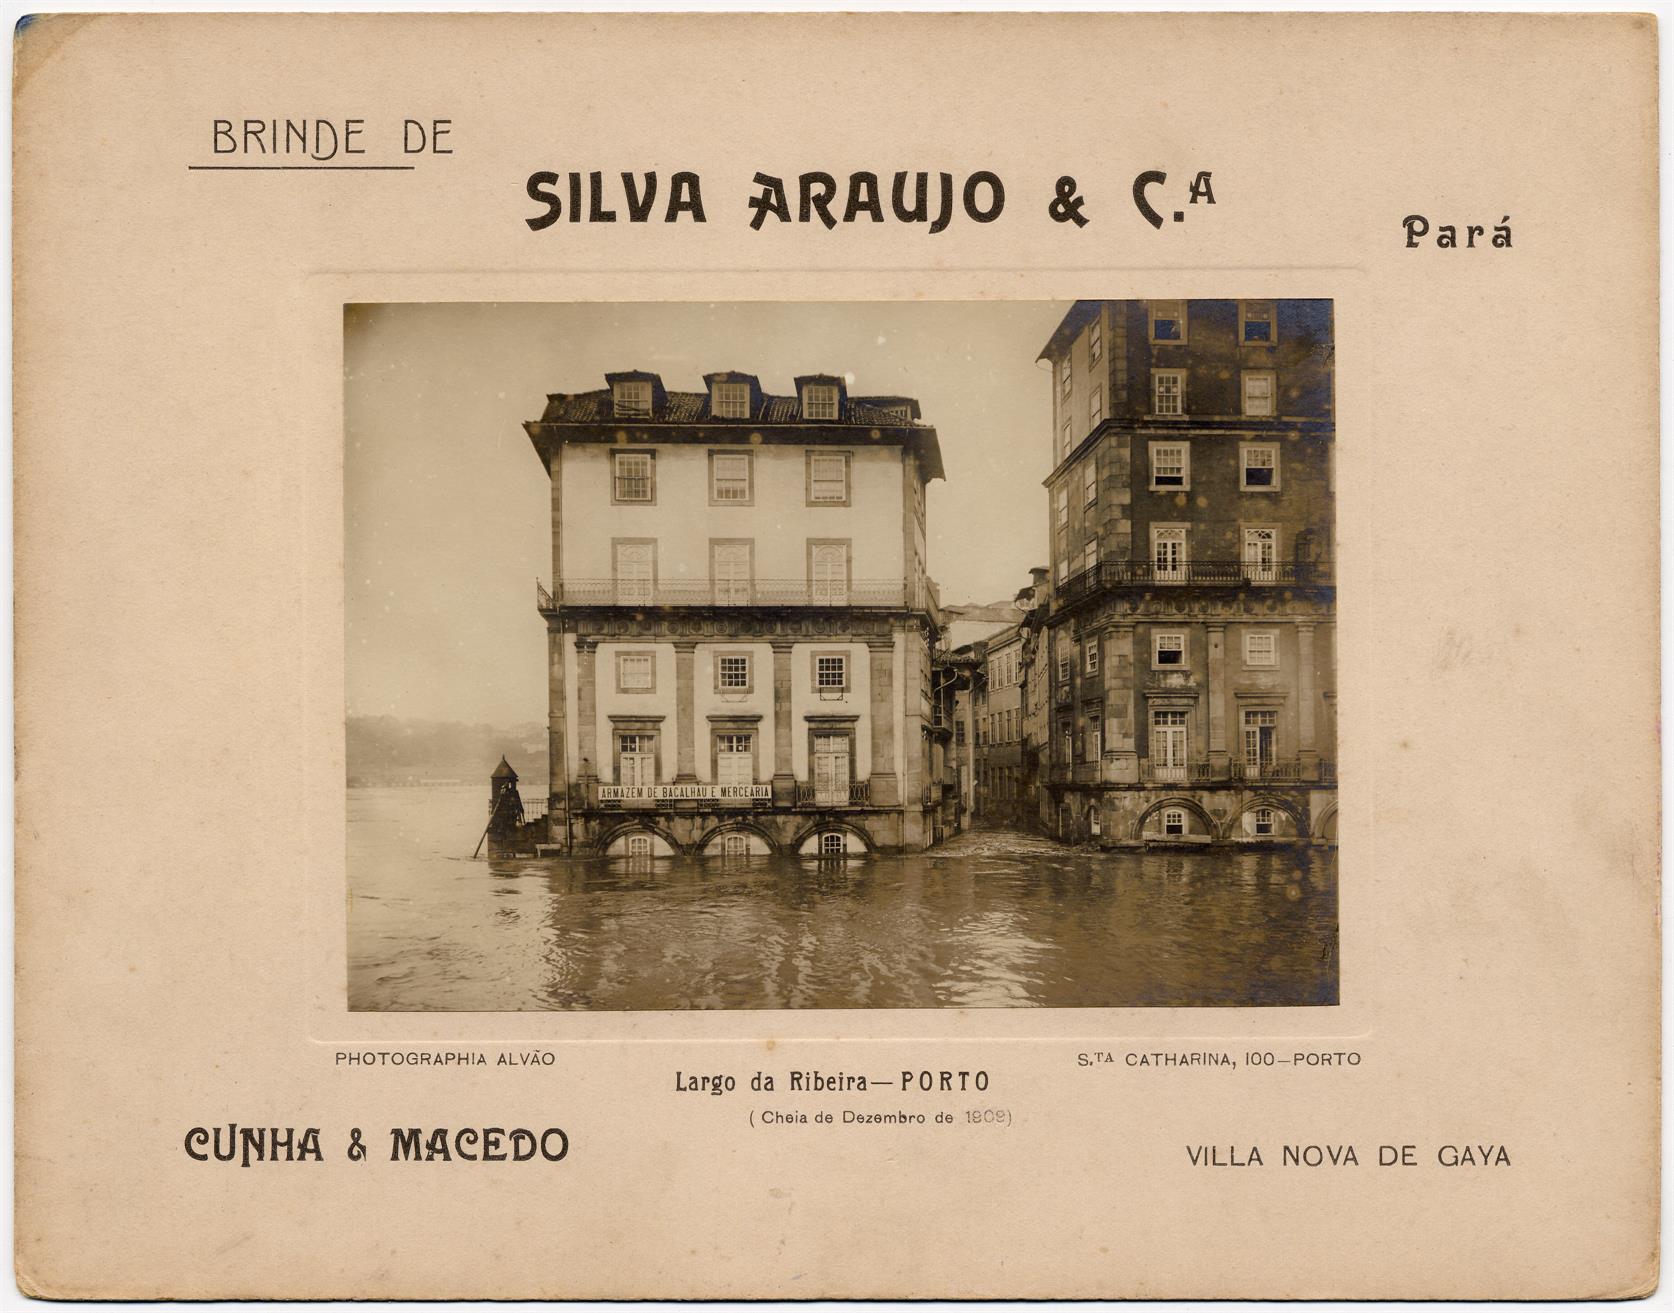 Cheia de Dezembro de 1909: Largo da Ribeira : Porto